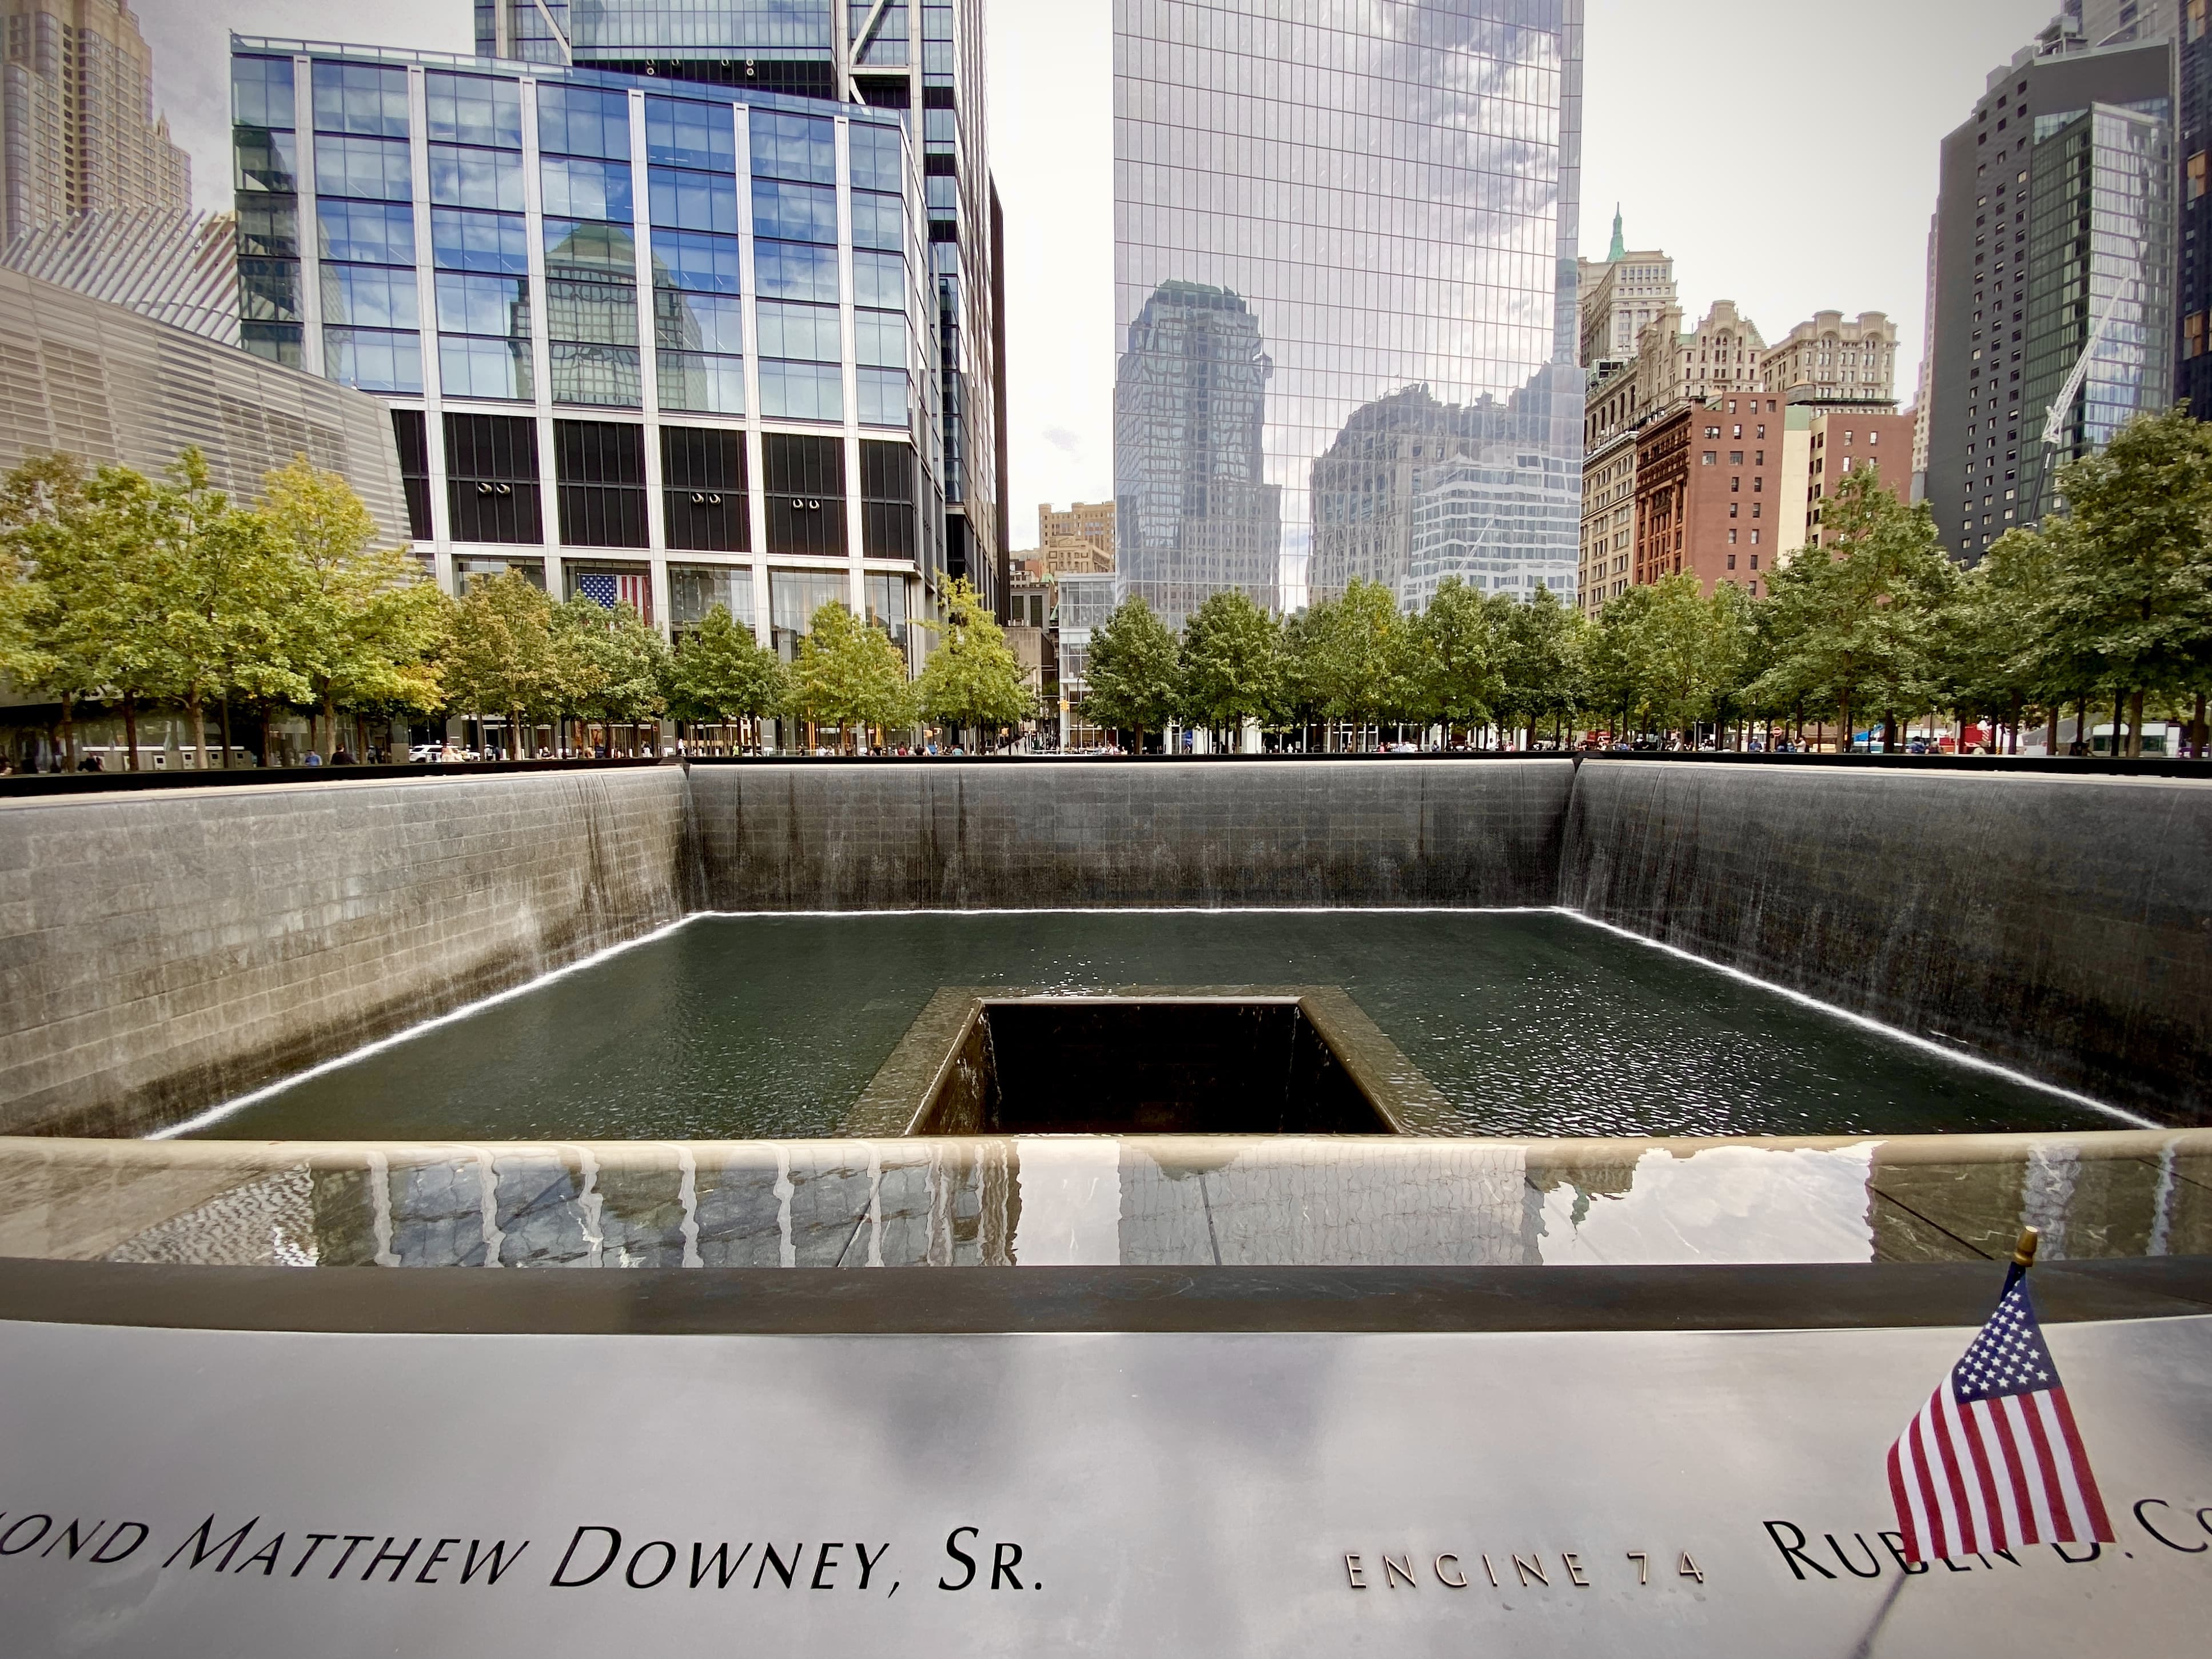 The original World Trade Center 9/11 memorial